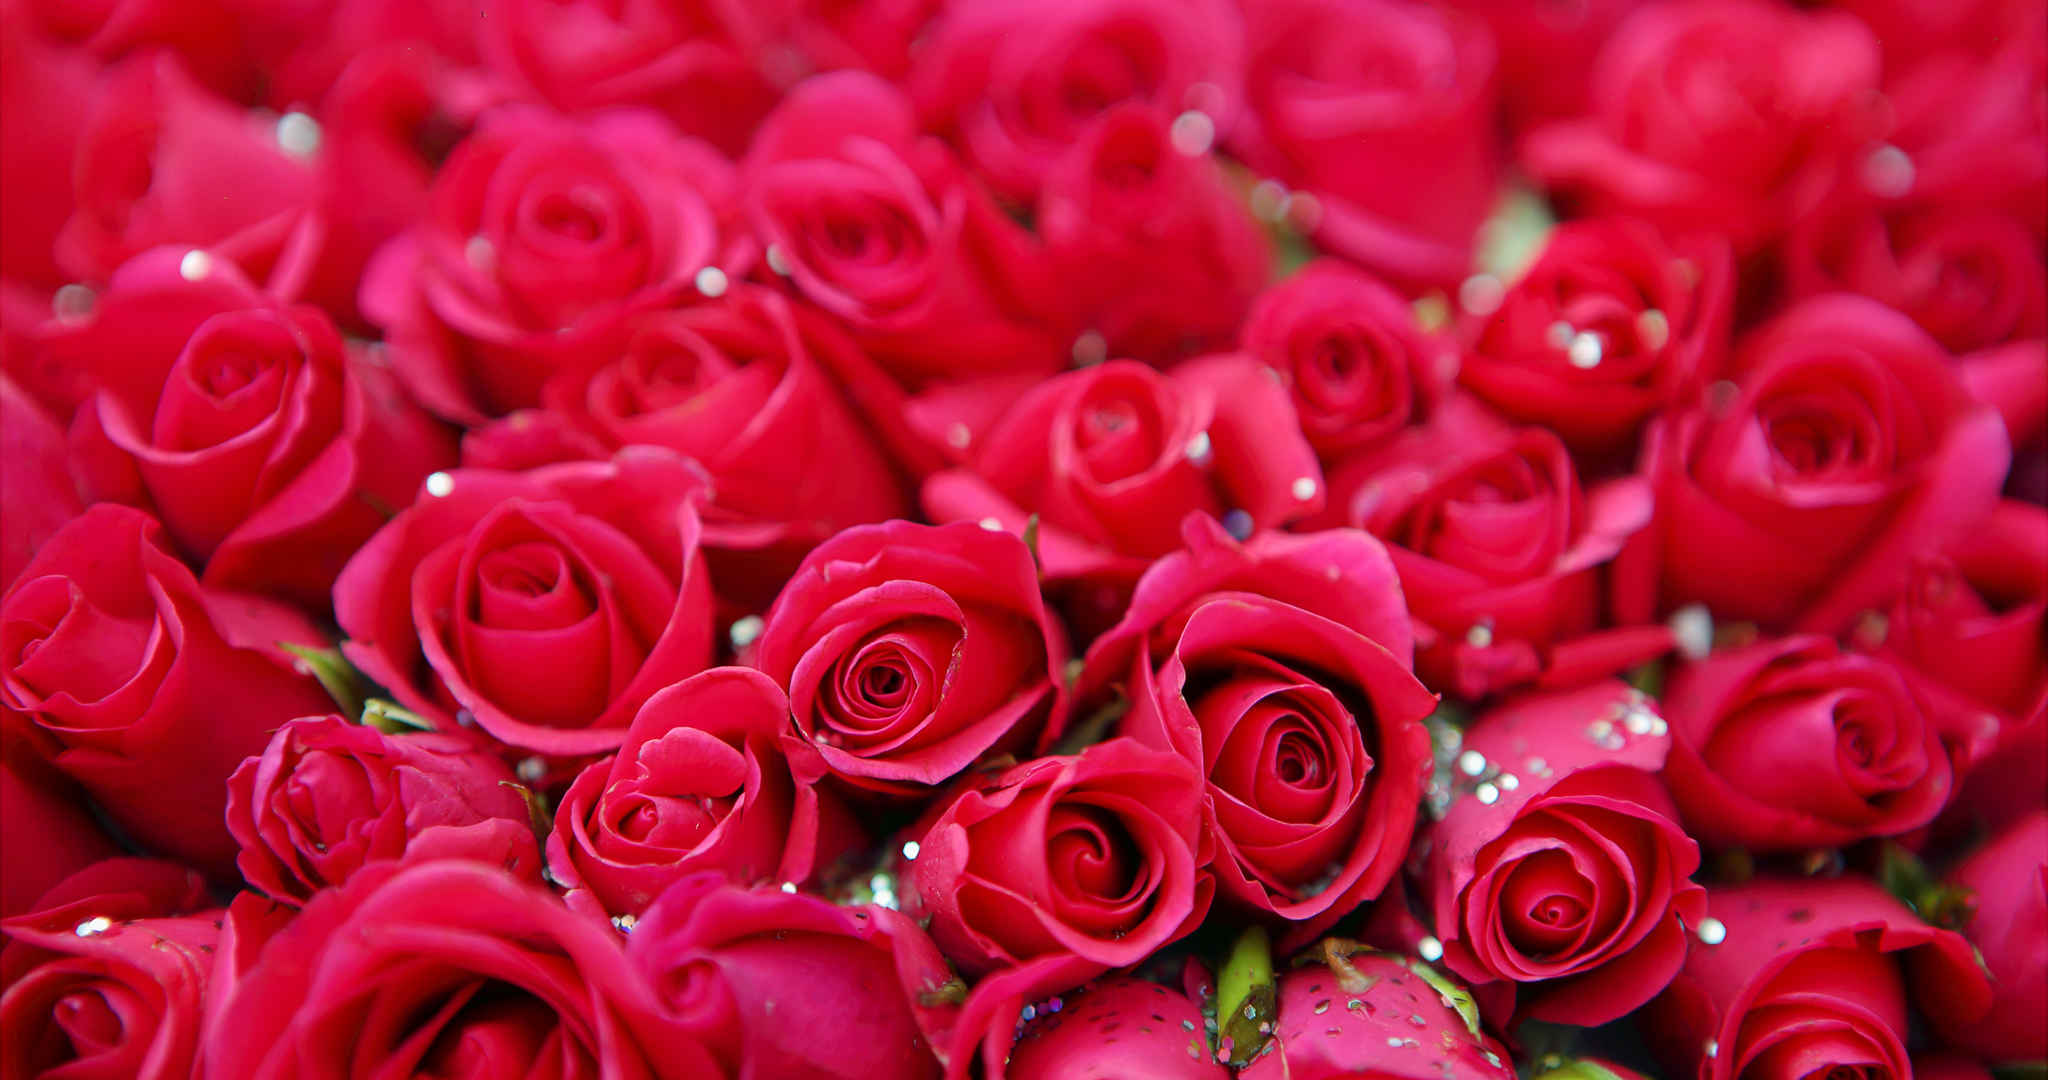 色彩红色艳丽并且花朵绽开的玫瑰花桌面壁纸